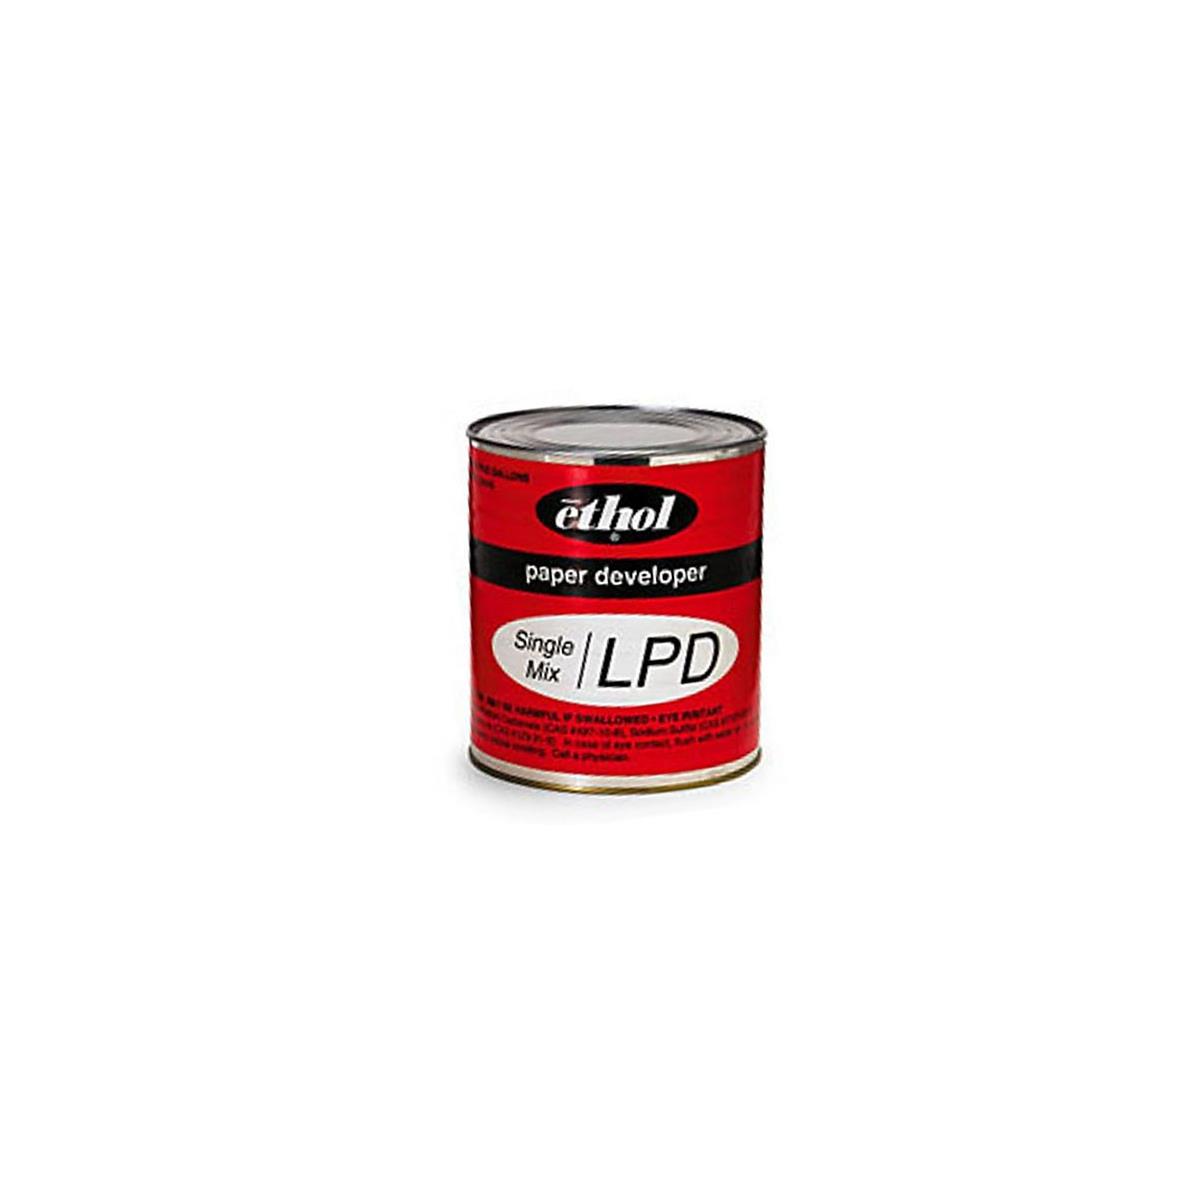 

Ethol LPD 5 Gallon Powder Black / White Paper Developer